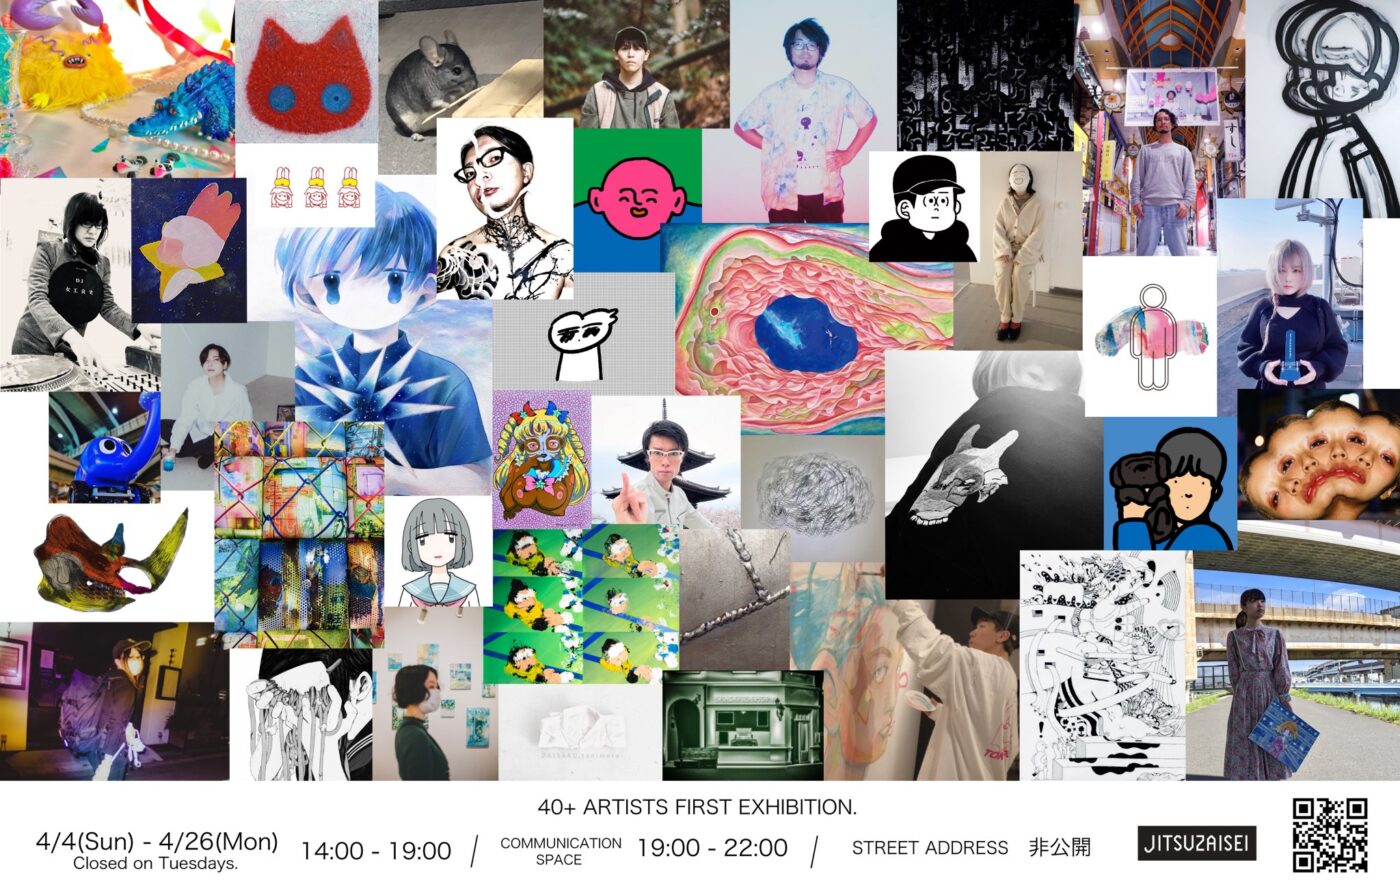 アーティスト・MINAMI MIYAJIMAが立ち上げる新スペース「JITSUZAISEI」、40名以上が参加するグループ展でスタート。クラウドファンディングの支援者のみに住所公開。